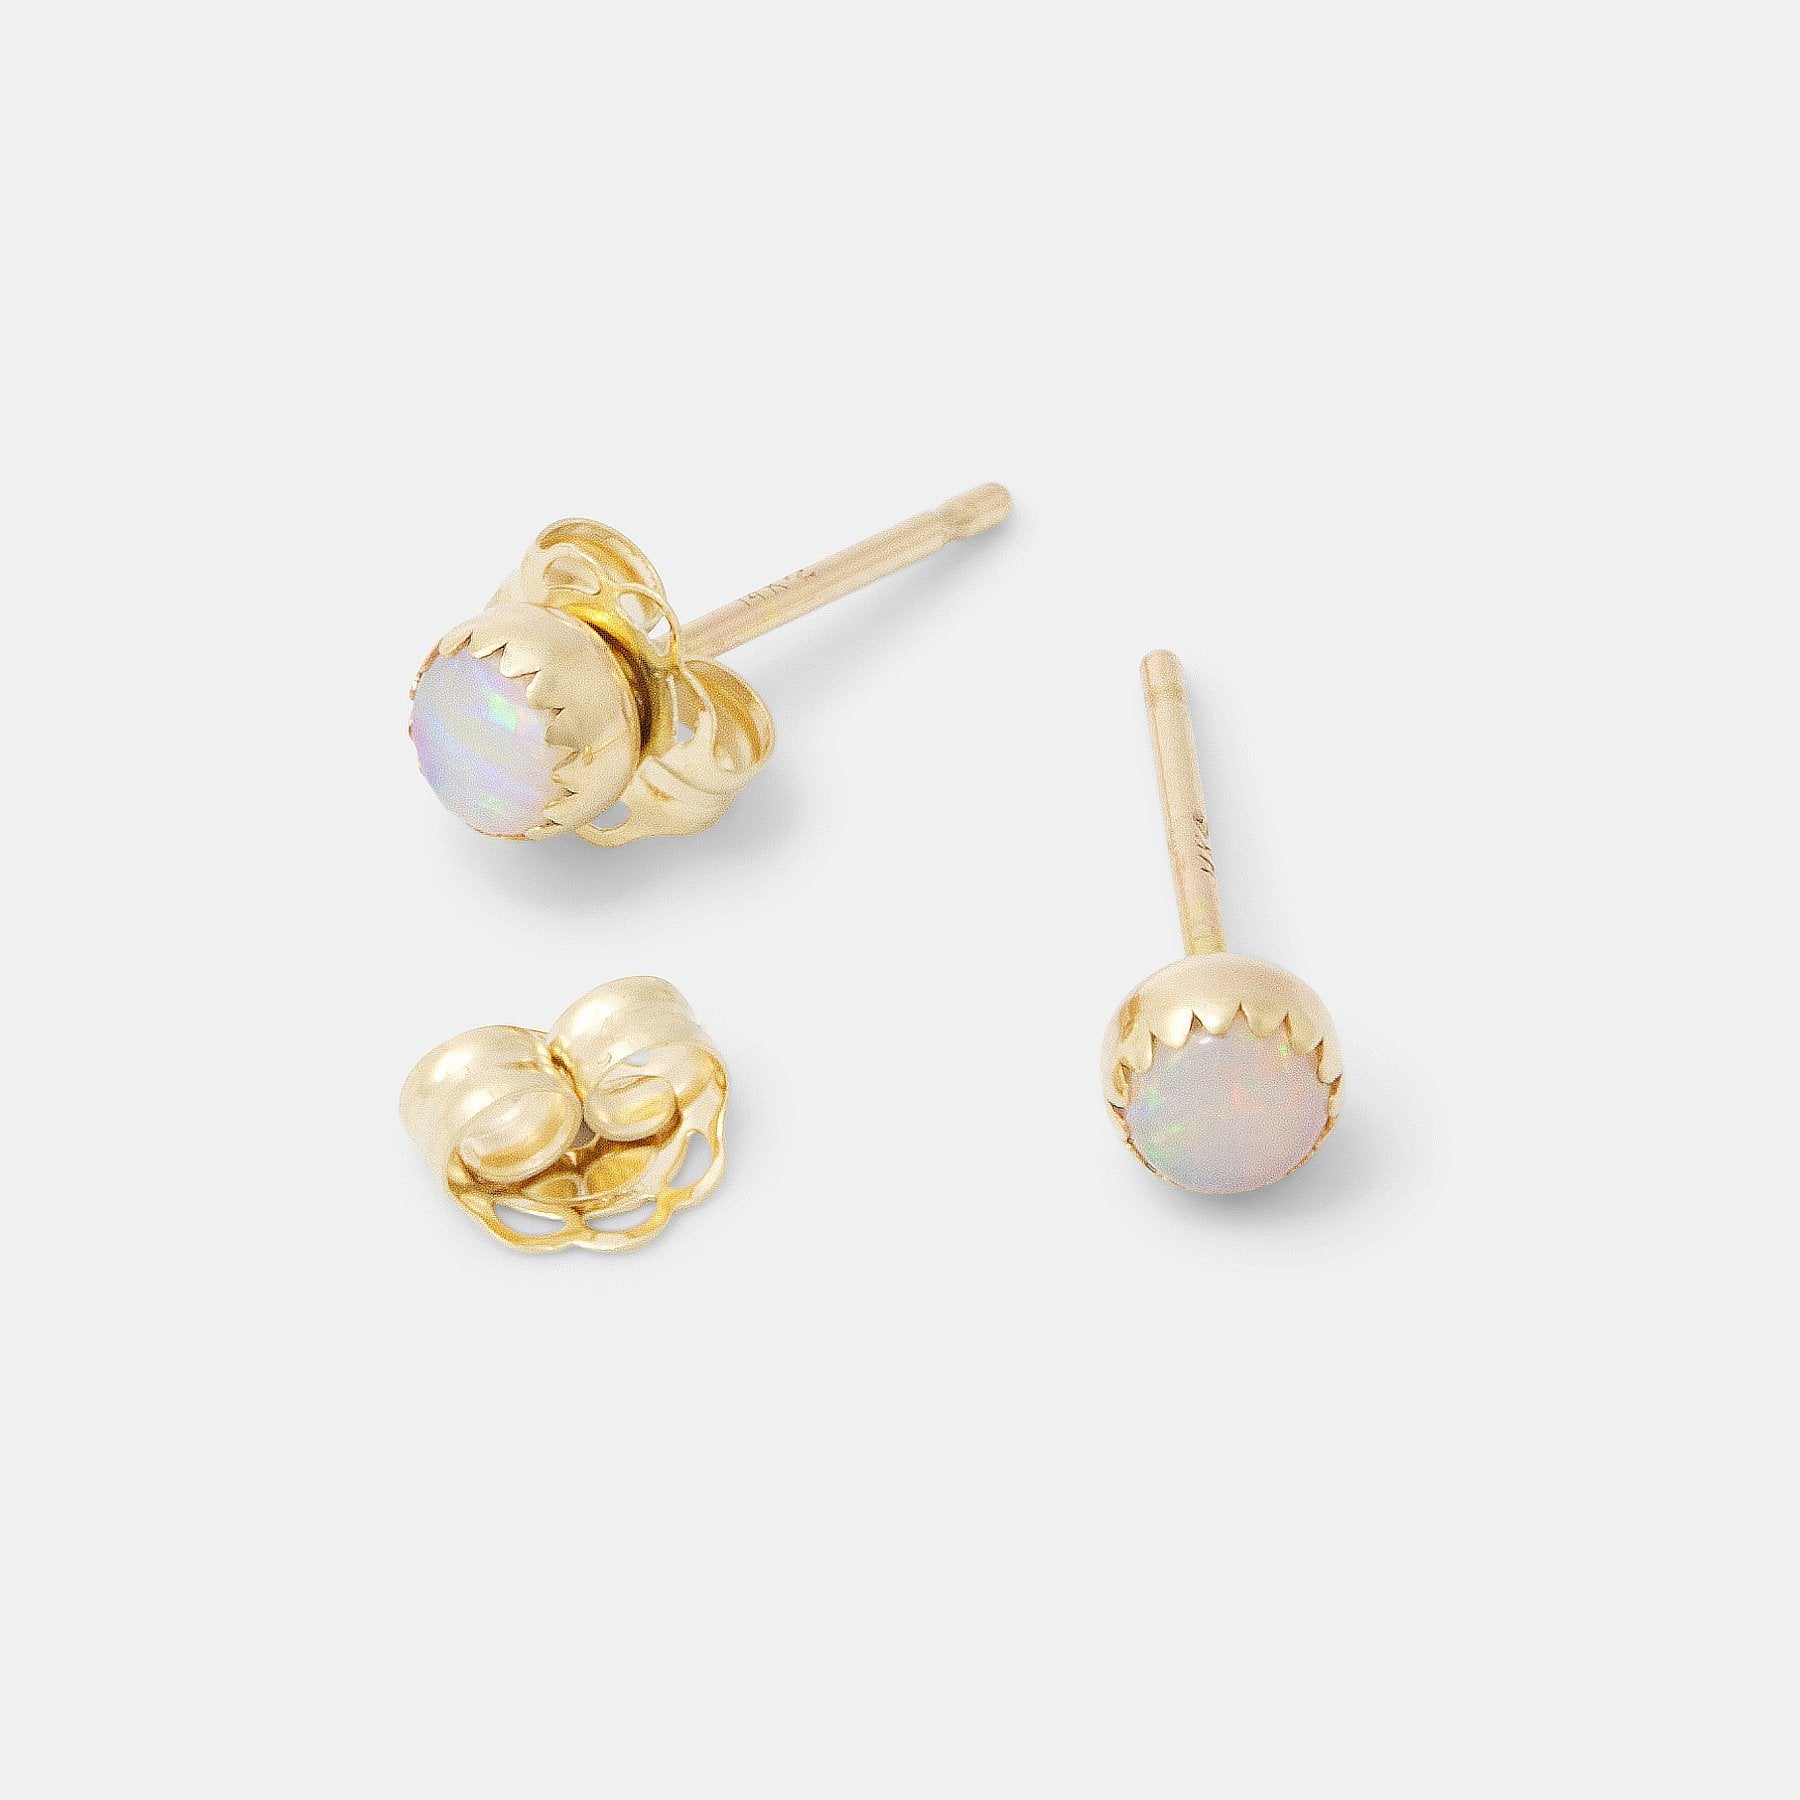 Opal & solid gold stud earrings - Simone Walsh Jewellery Australia